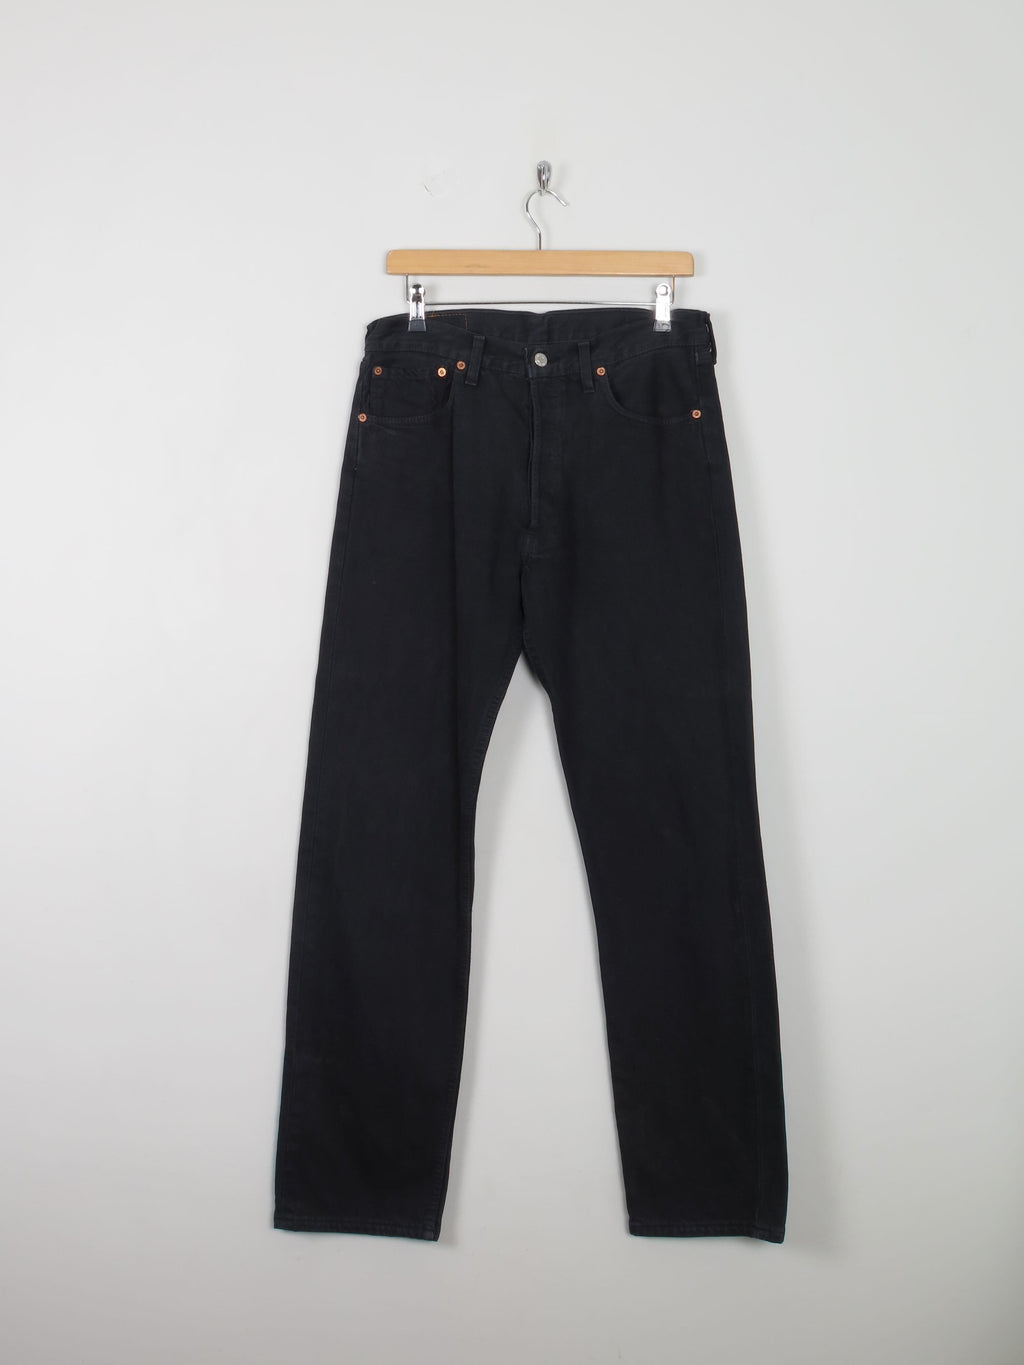 Men's Vintage Black Levi's 501 Jeans 33" 32" - The Harlequin